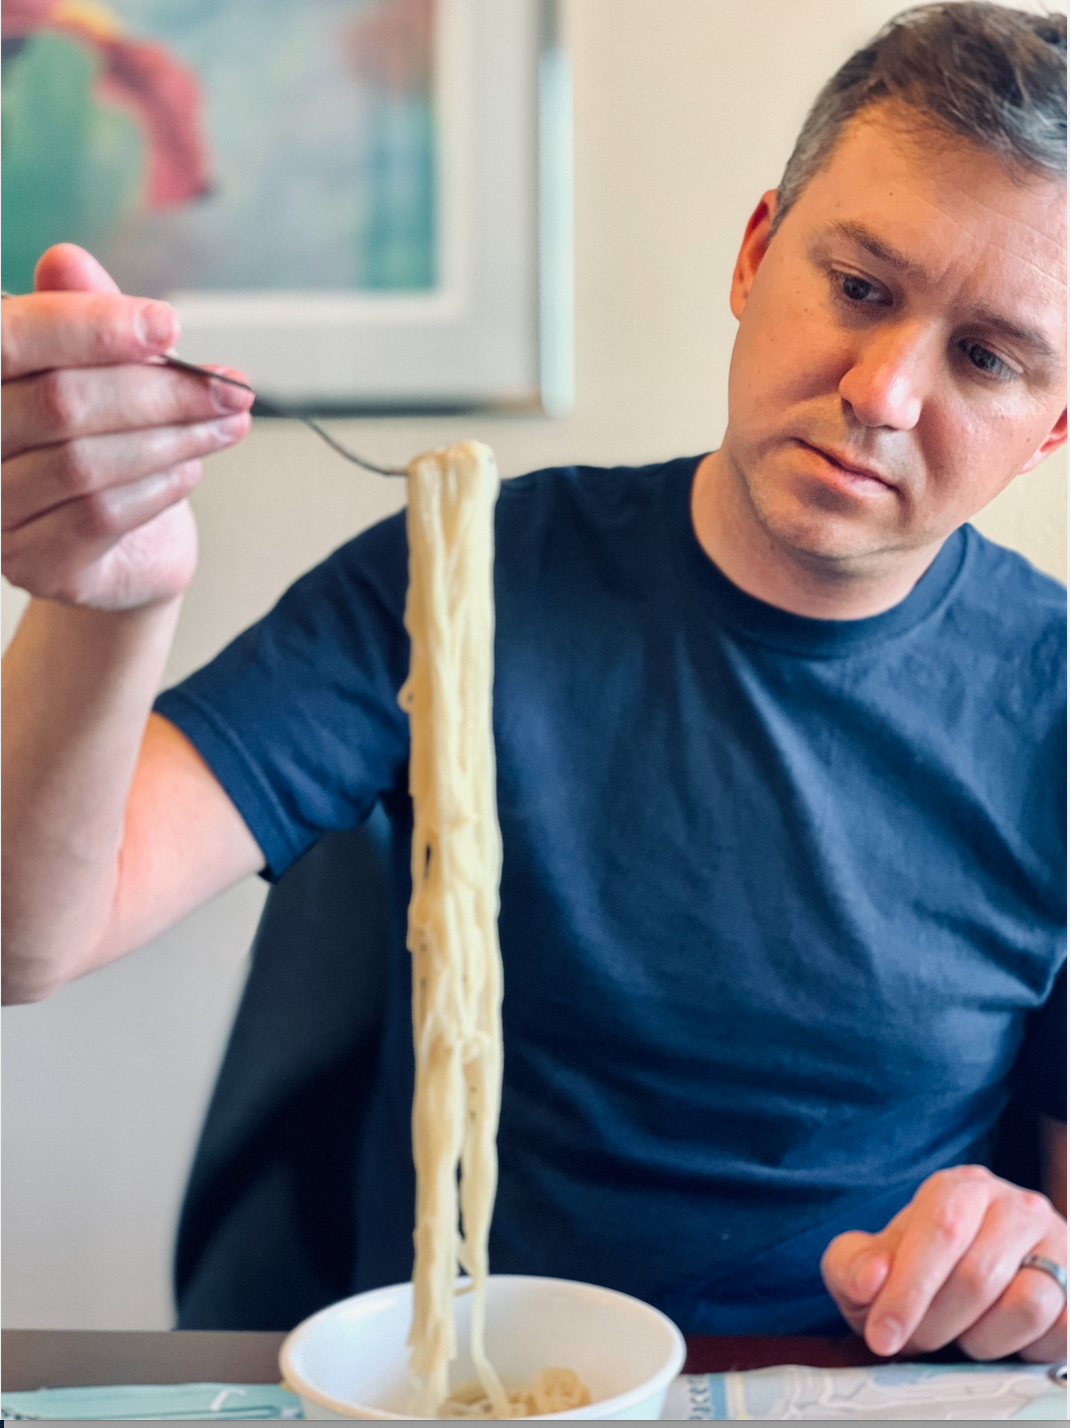 Dan inspecting noodles